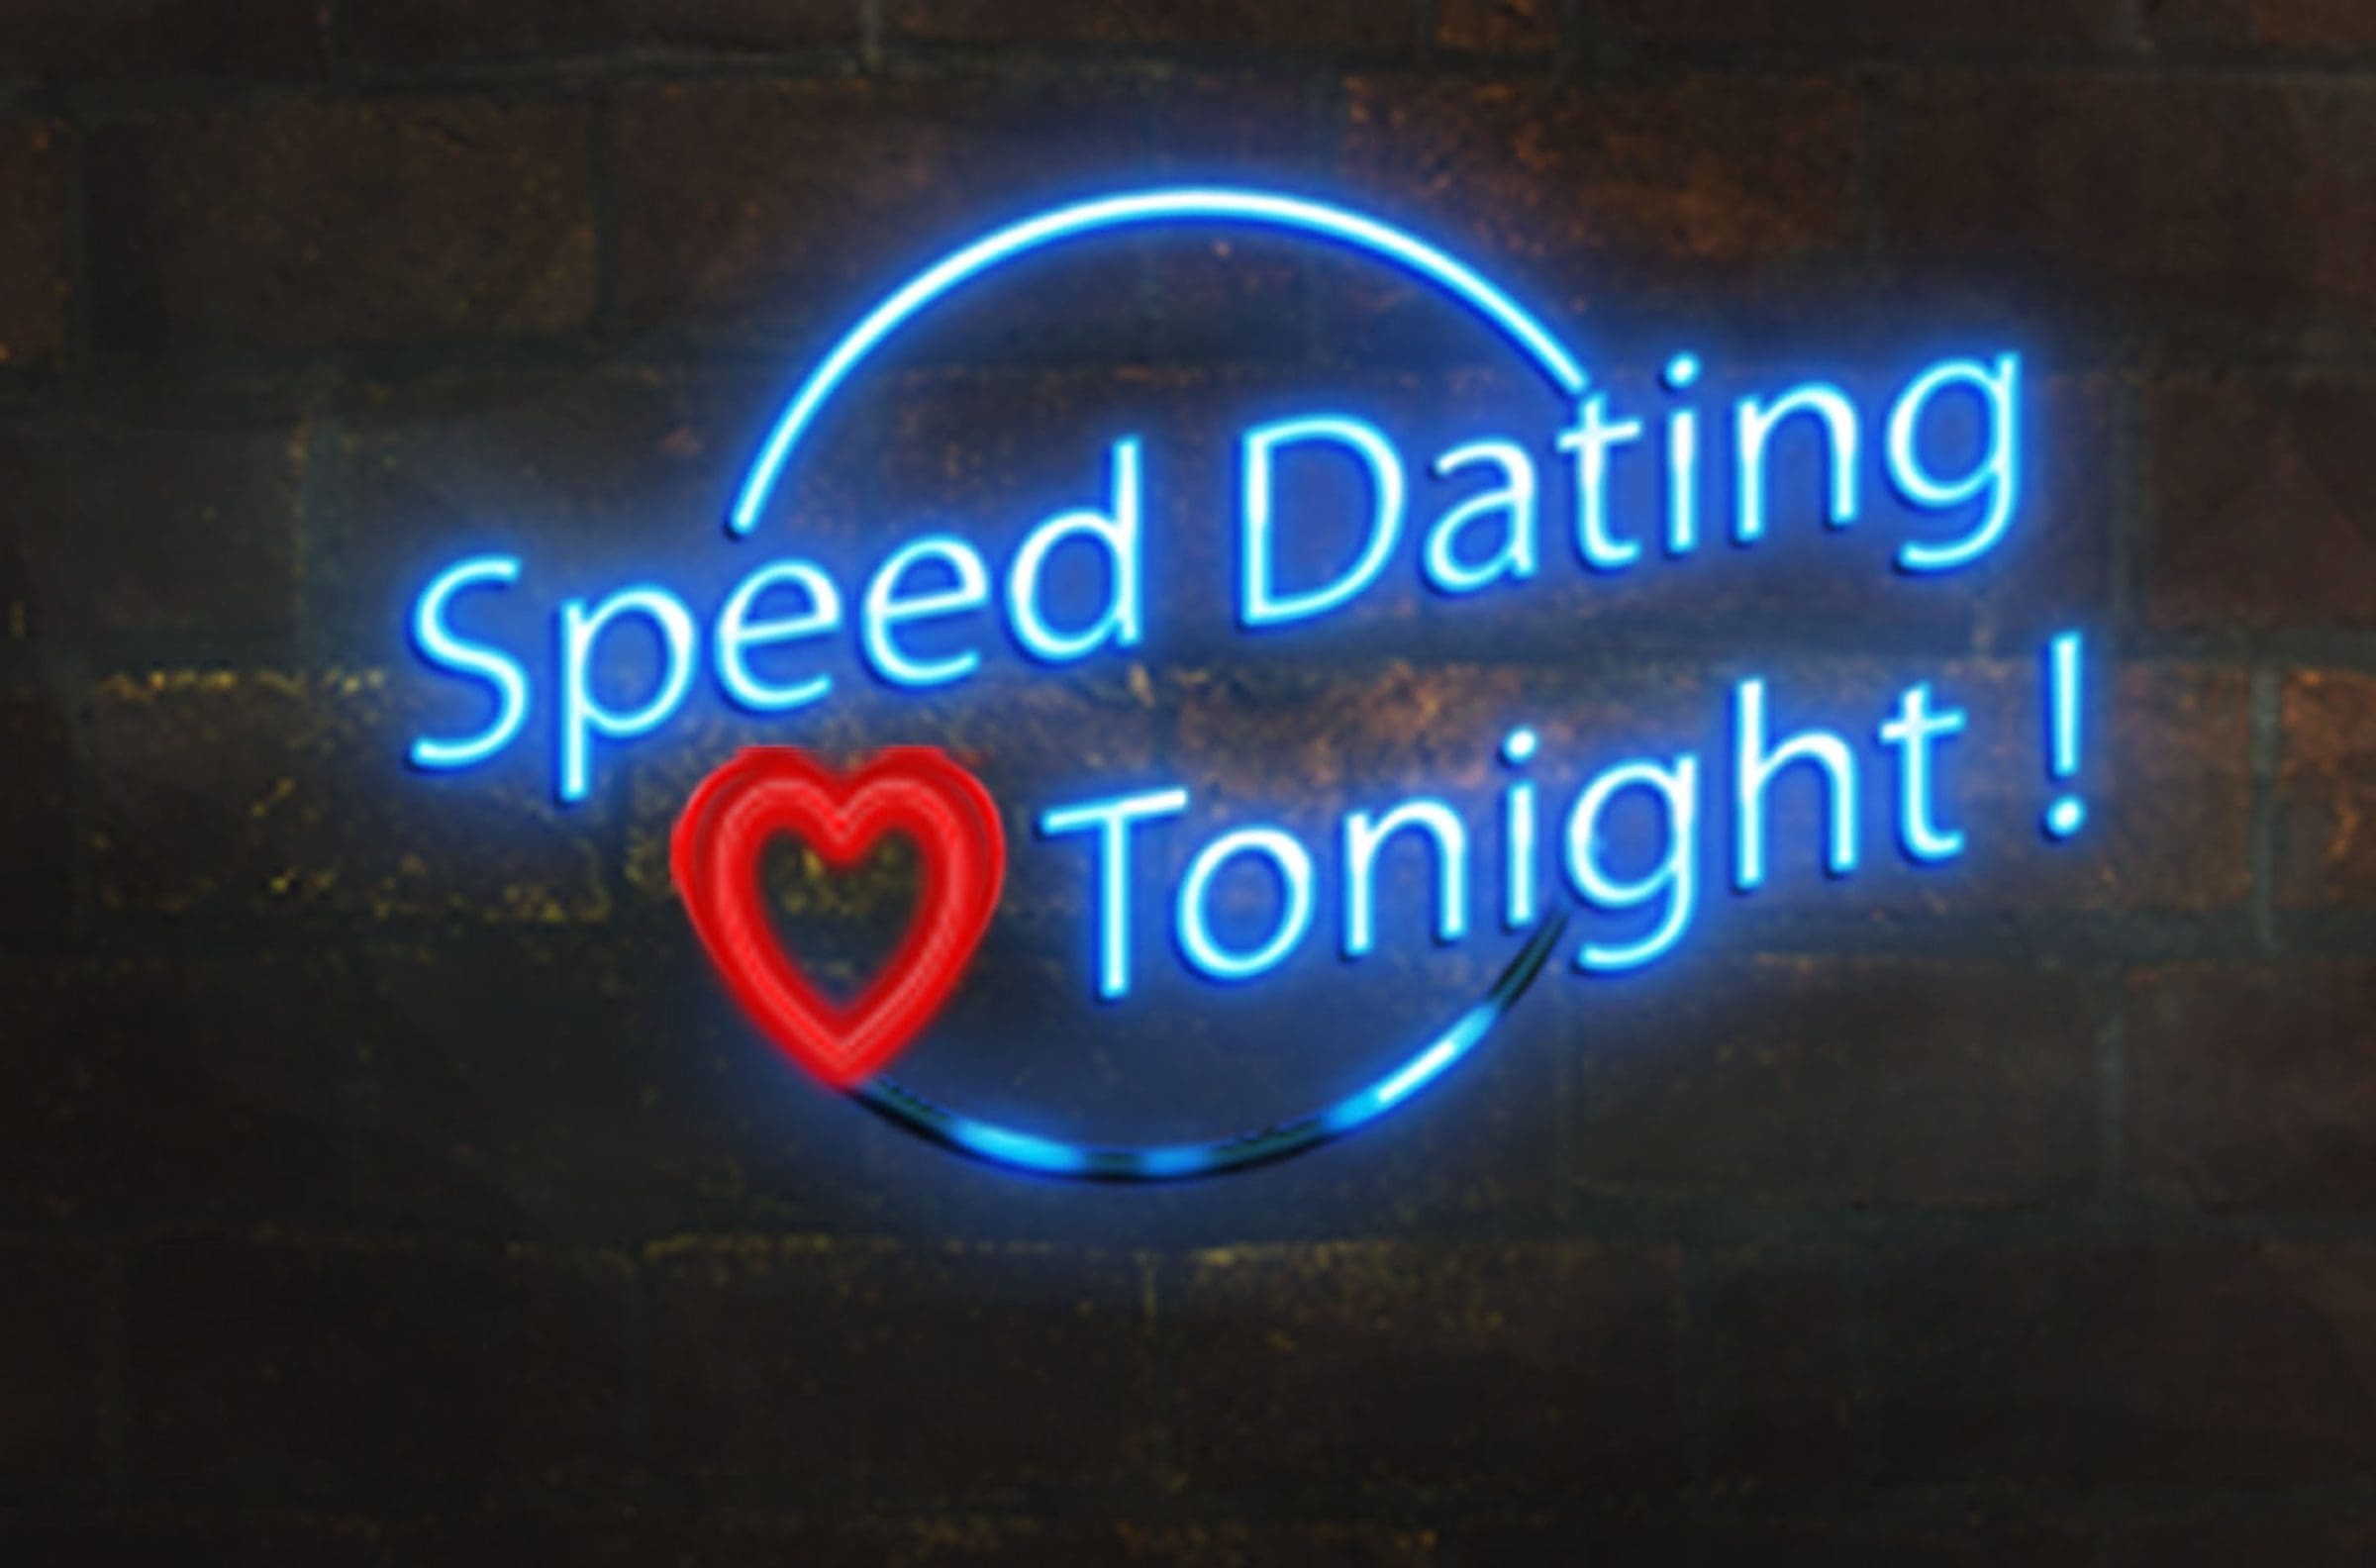 speed dating event tonight